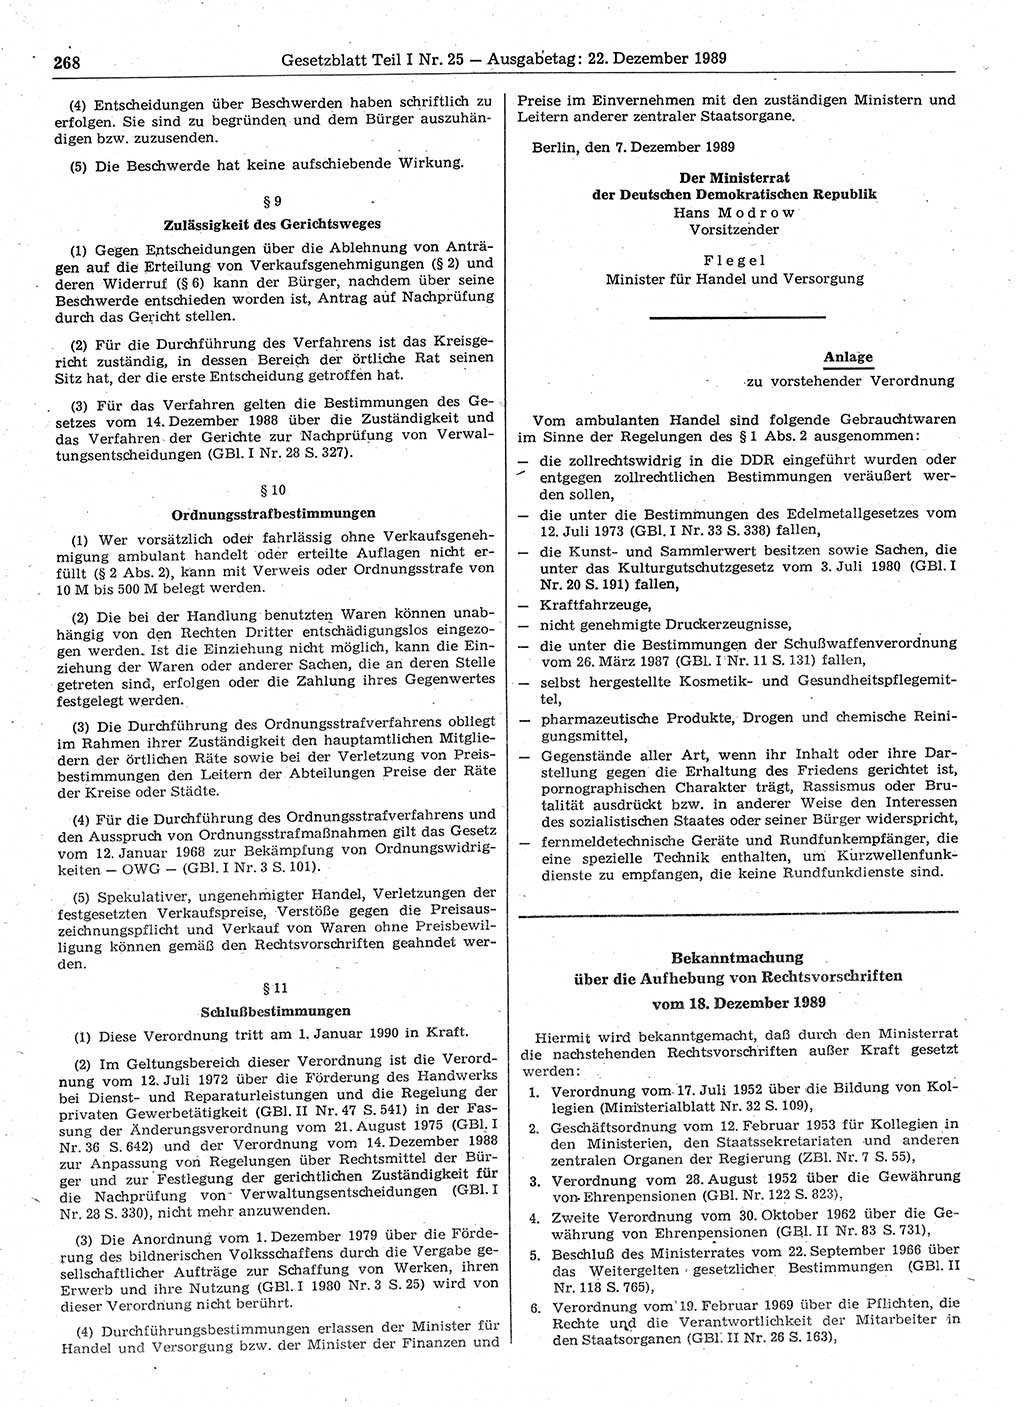 Gesetzblatt (GBl.) der Deutschen Demokratischen Republik (DDR) Teil Ⅰ 1989, Seite 268 (GBl. DDR Ⅰ 1989, S. 268)